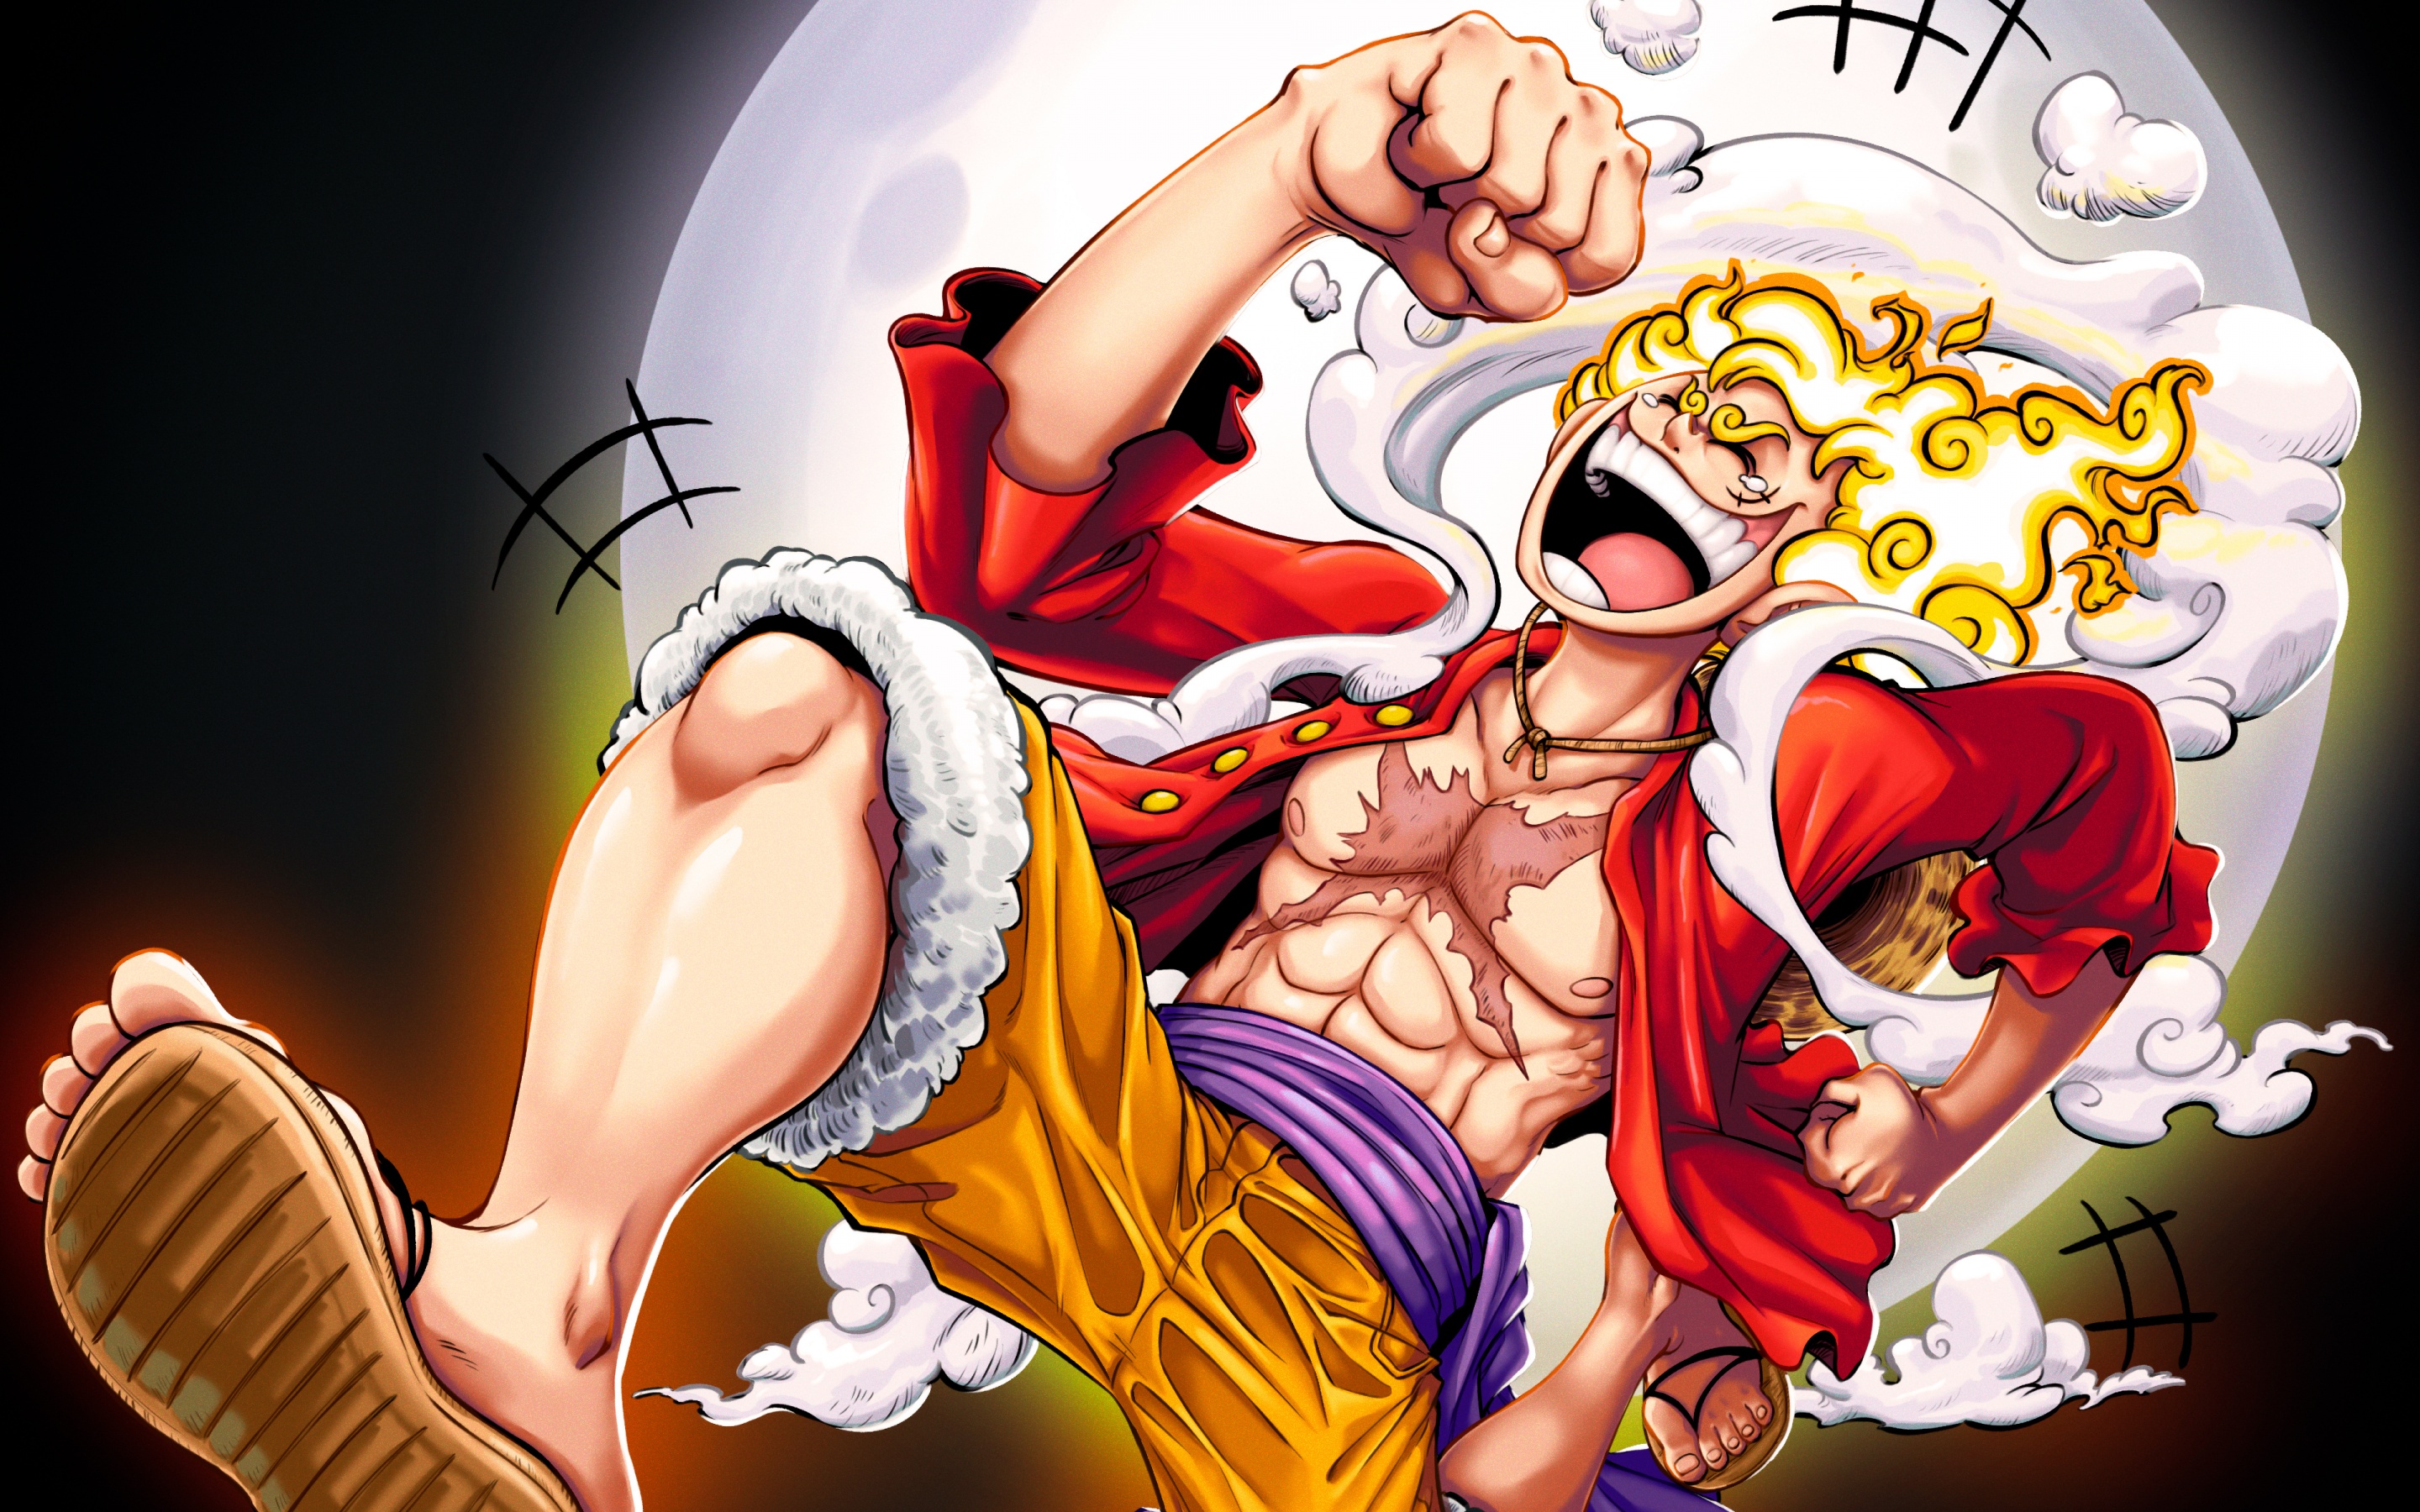 Với chất lượng 4K đỉnh cao, bộ hình nền One Piece với hình ảnh Luffy Gear 5 này là sự lựa chọn tốt nhất cho fan cuồng anime và manga. Hãy cảm nhận sự uy lực của nhân vật này ngay trên màn hình của bạn!